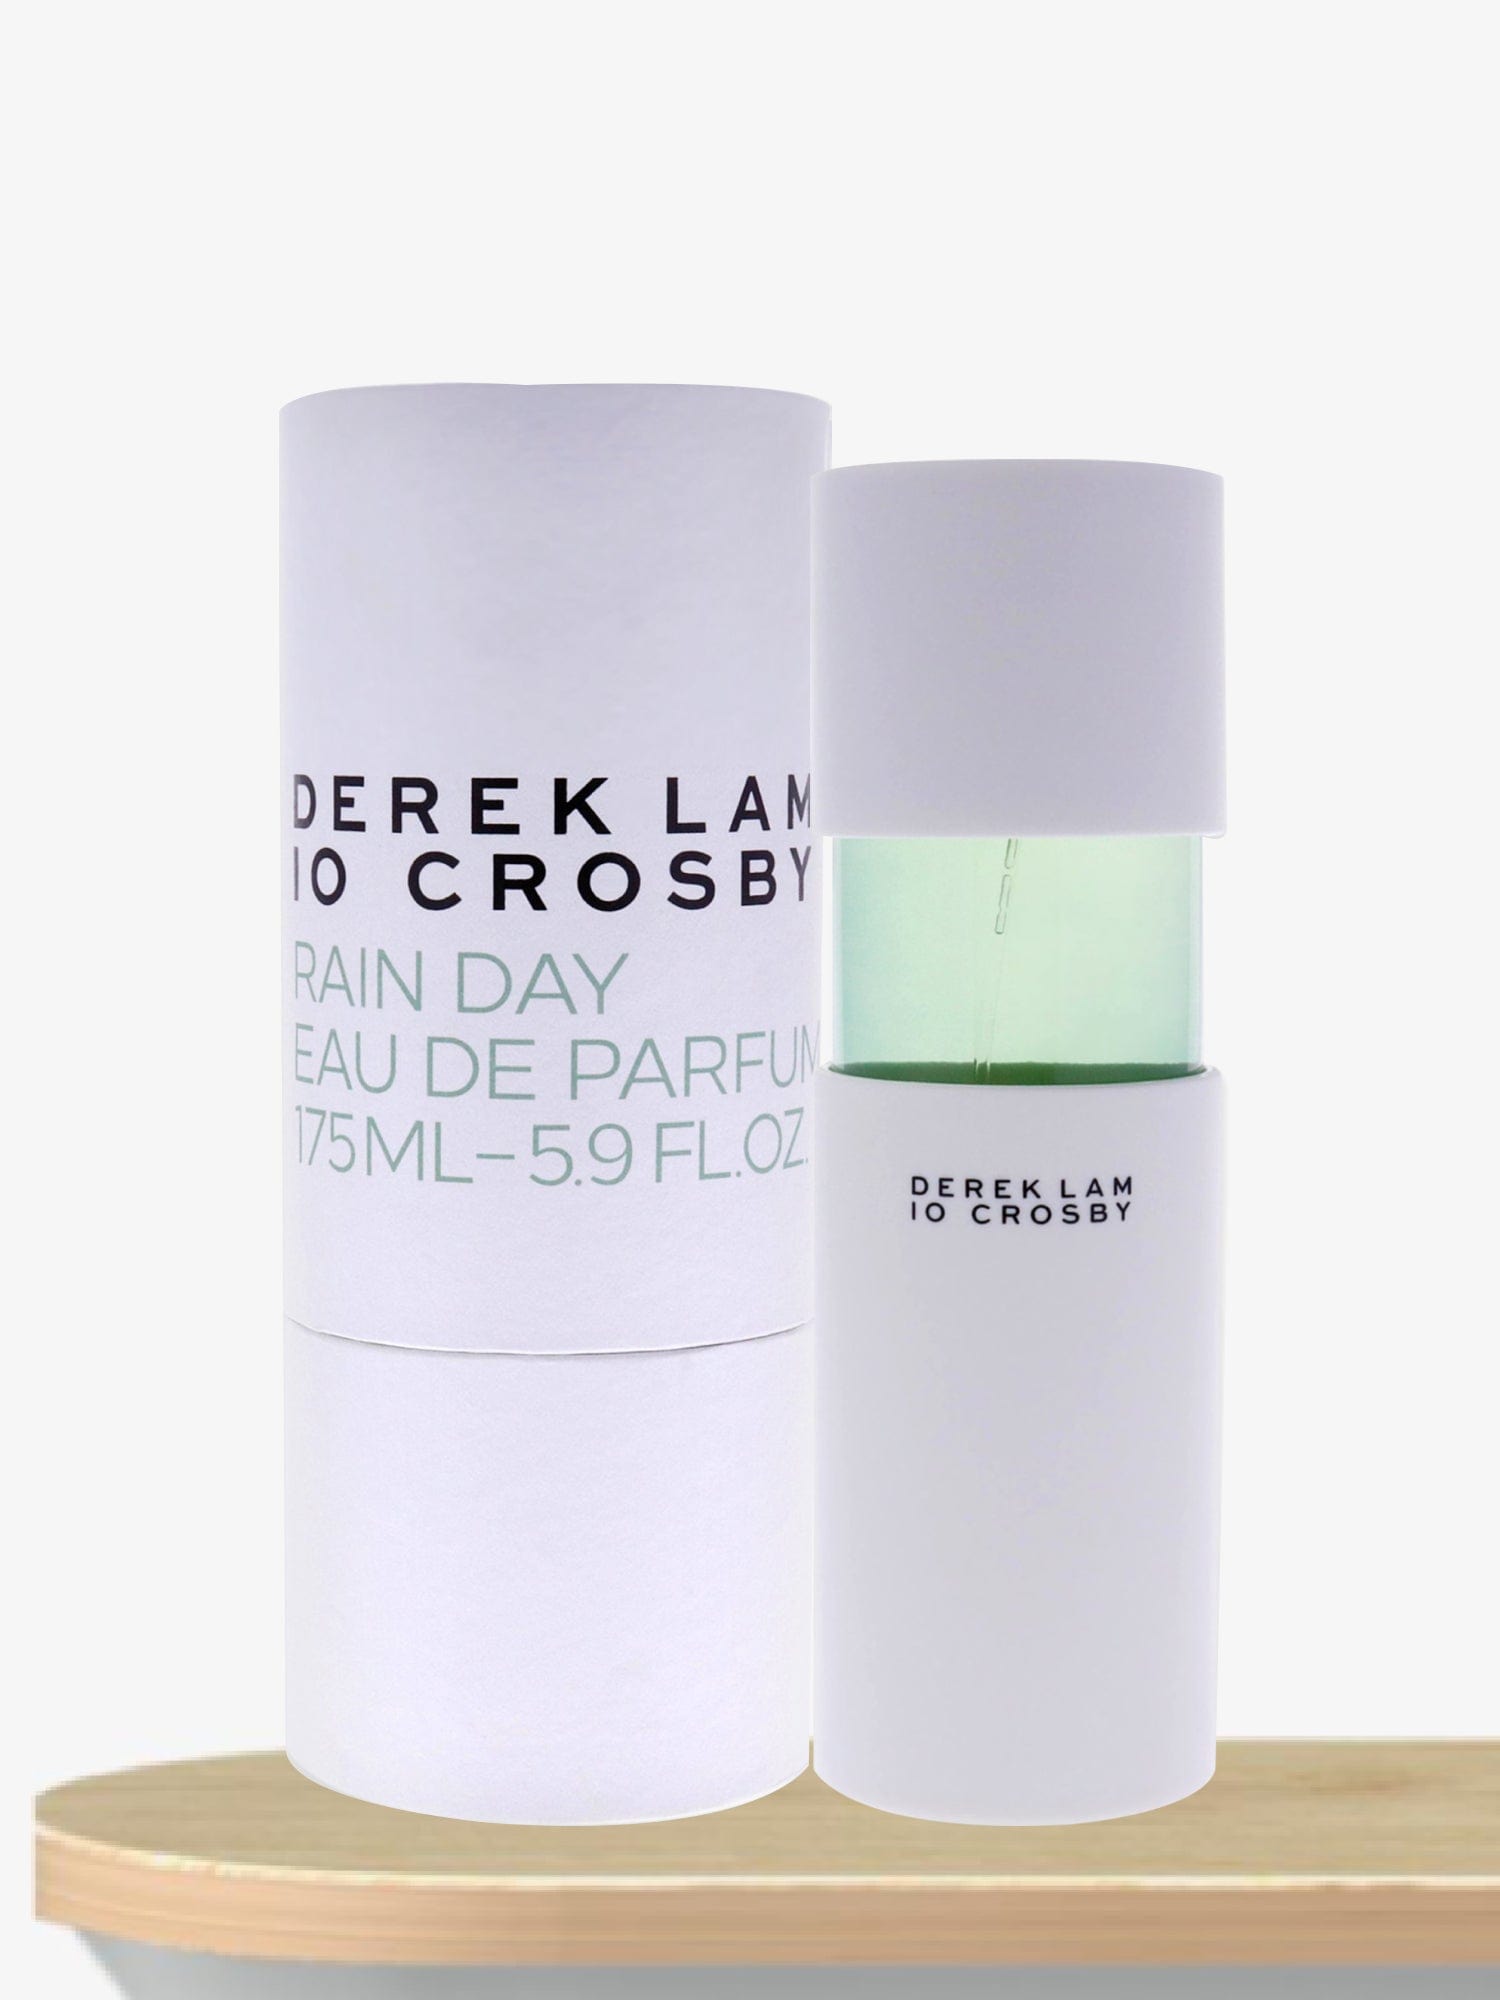 Derek Lam Rain Day Eau de Parfum 100 mL / Female